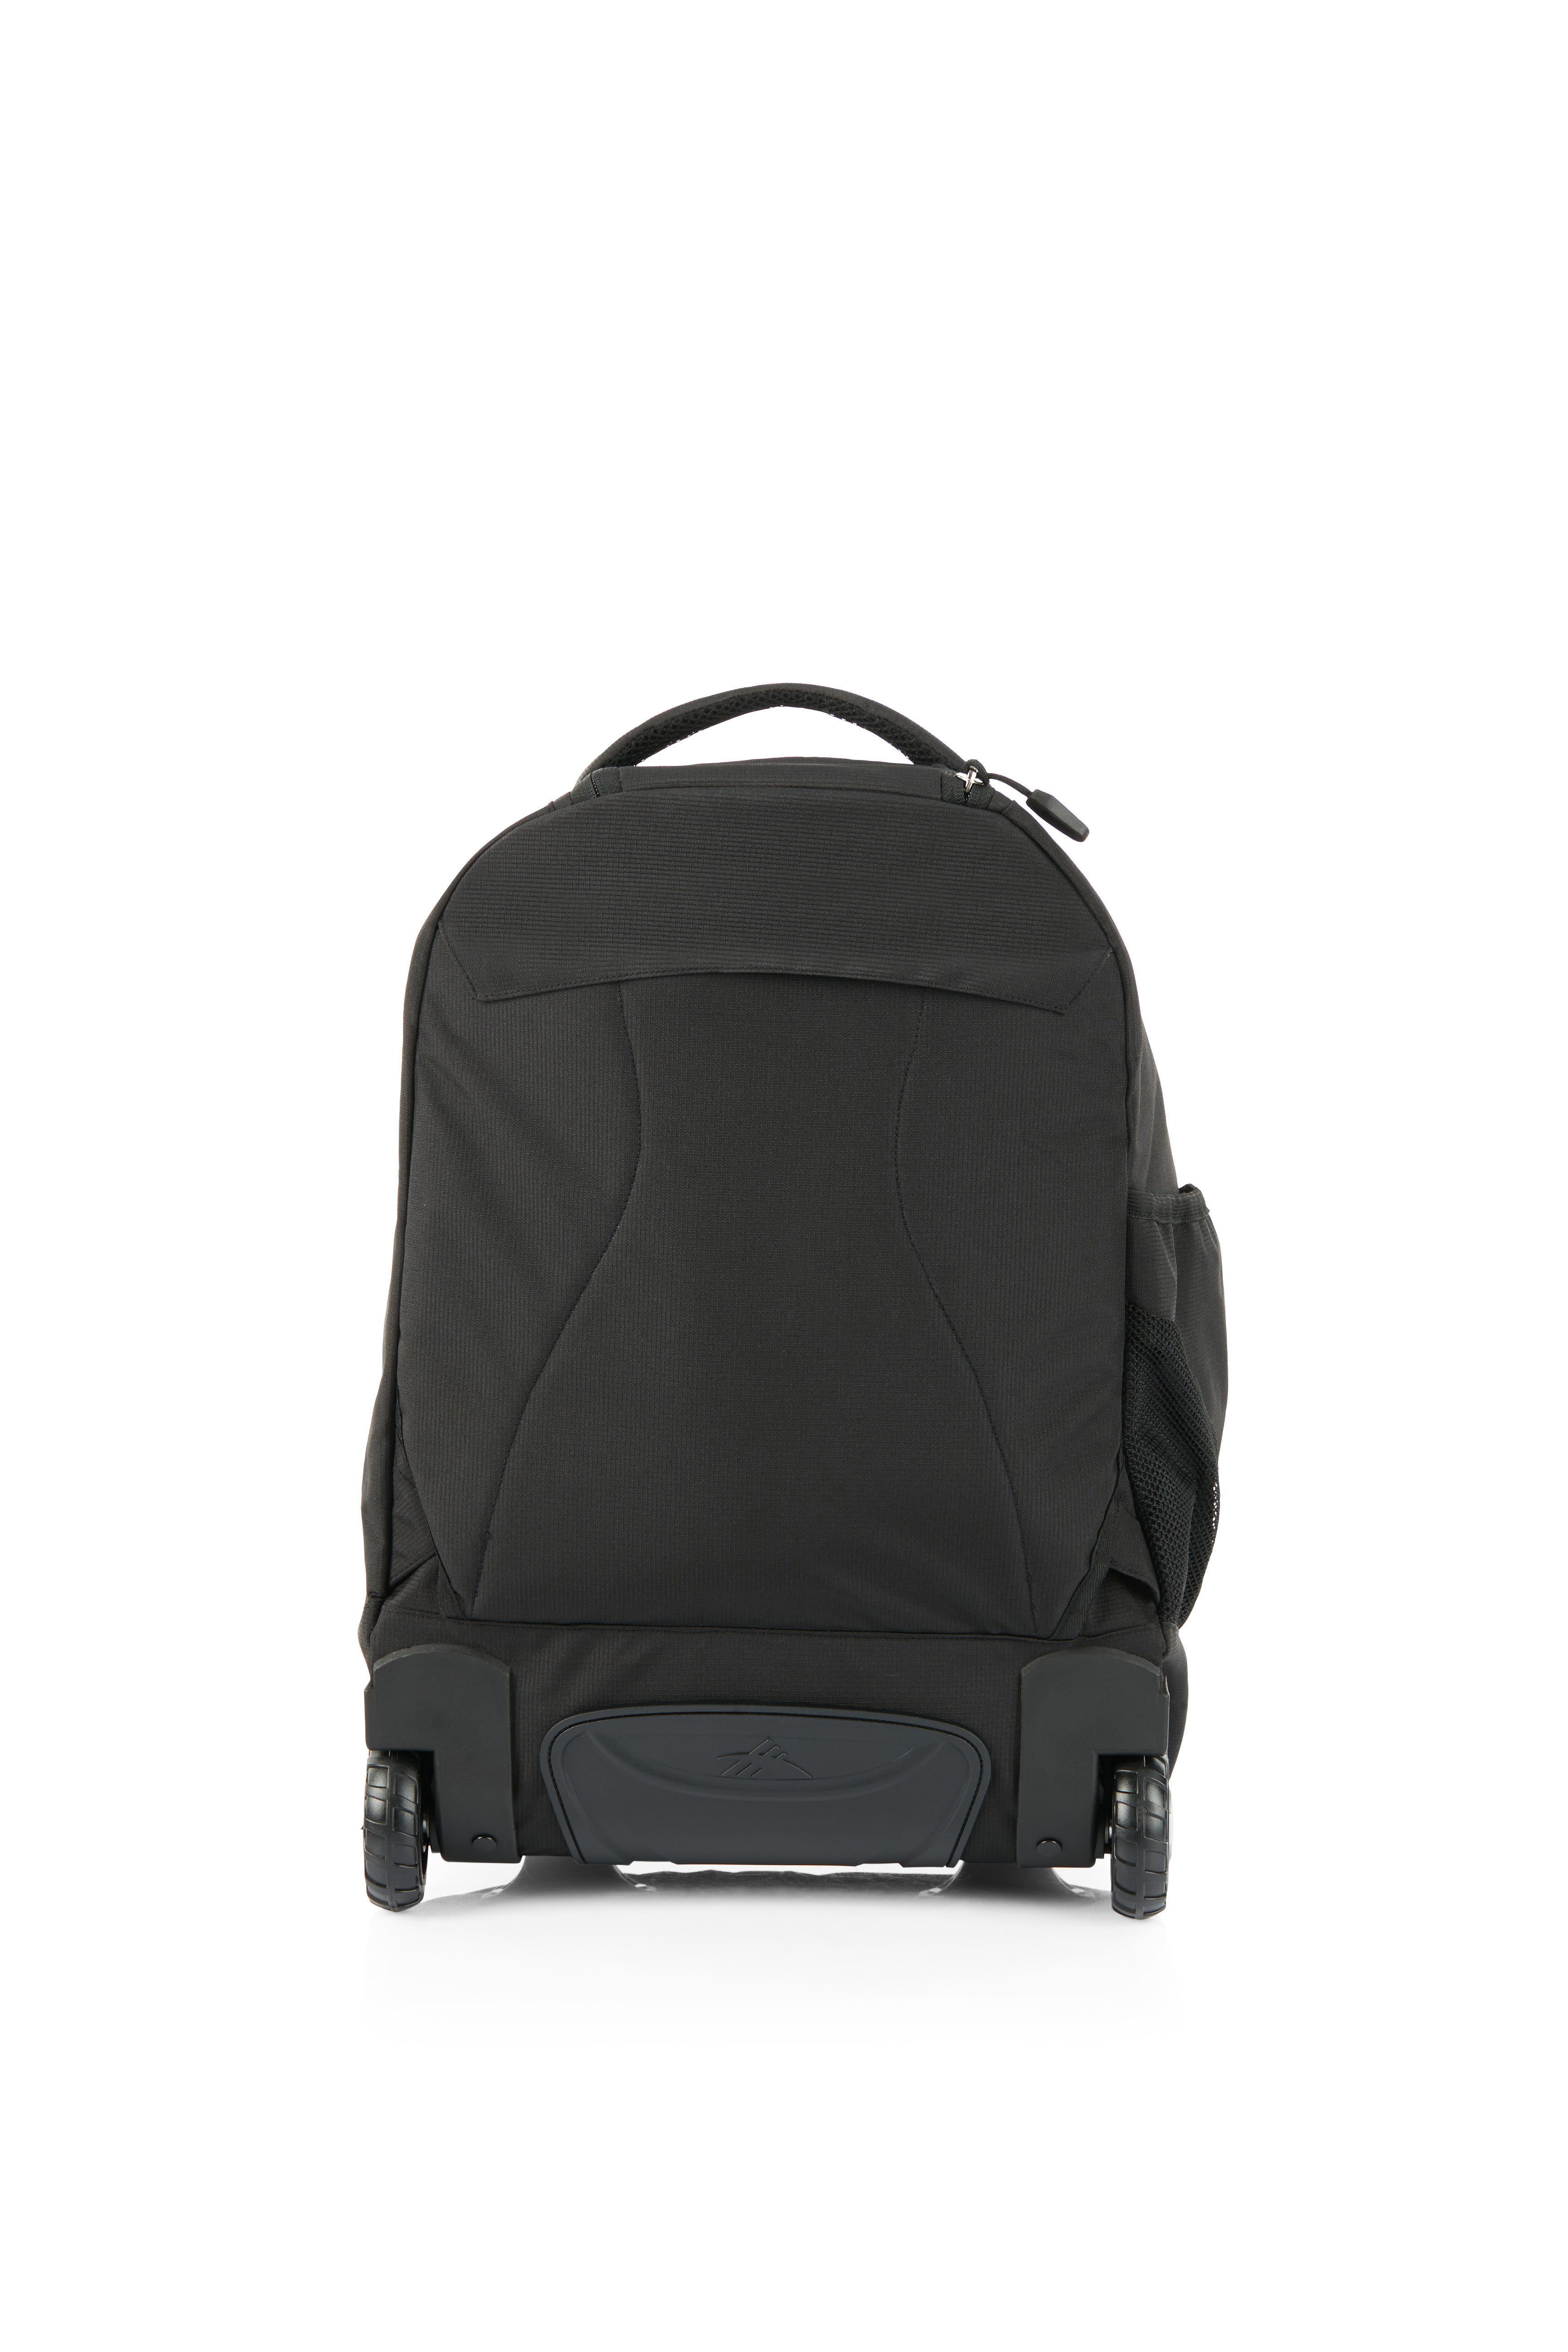 High Sierra - Jarvis Pro backpack on wheels - Black-5